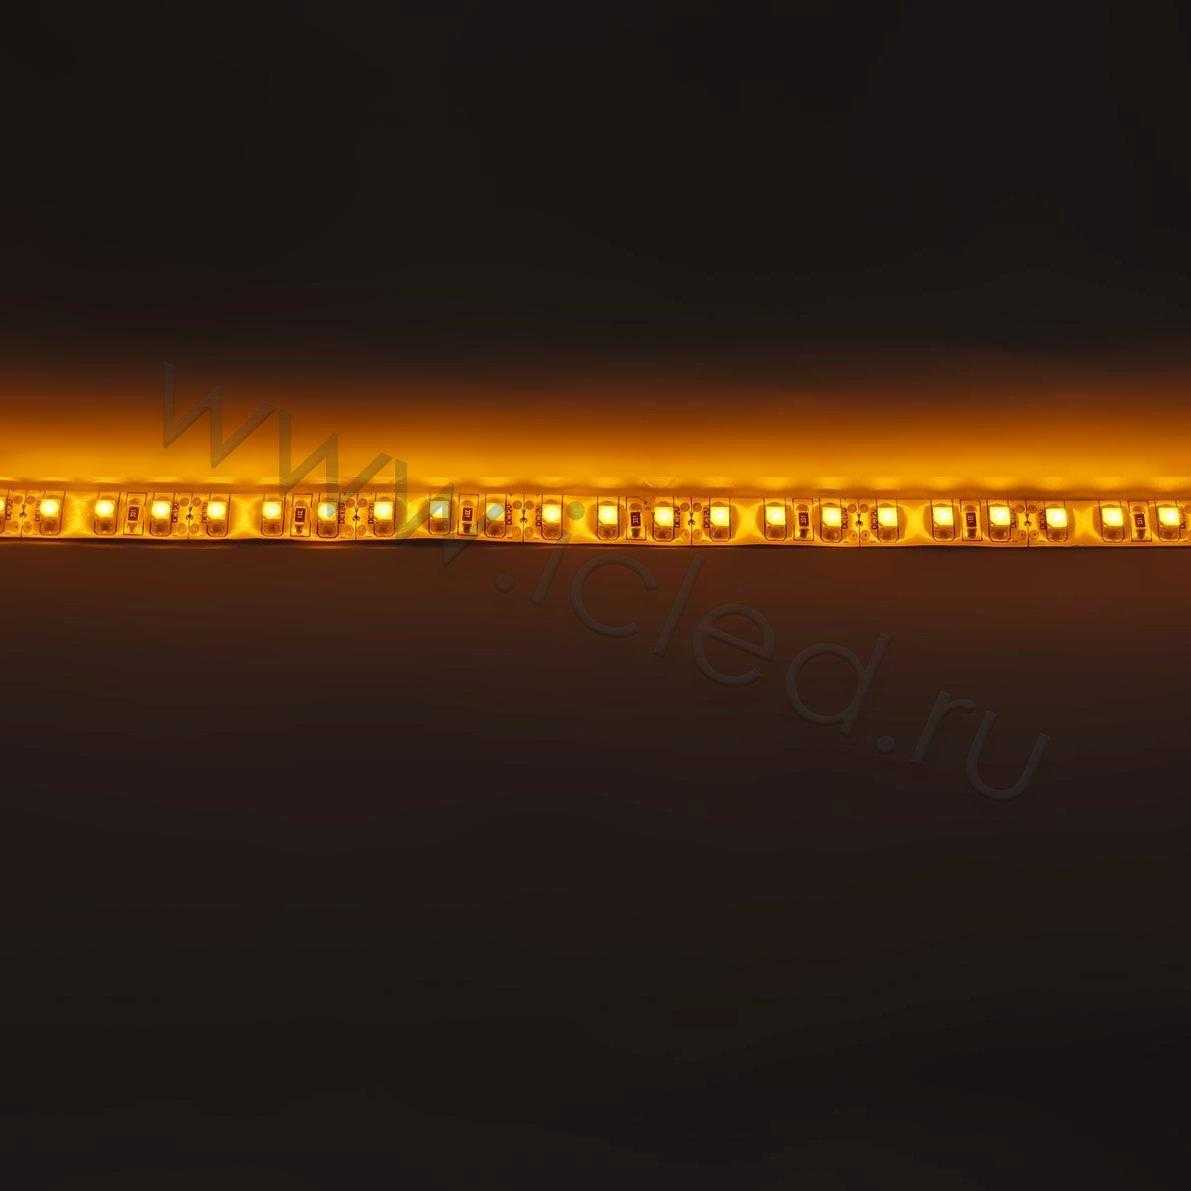 Влагозащищенные светодиодные ленты Светодиодная лента Standart PRO class, 3528, 120 led/m, Yellow, 12V, IP65 Icled